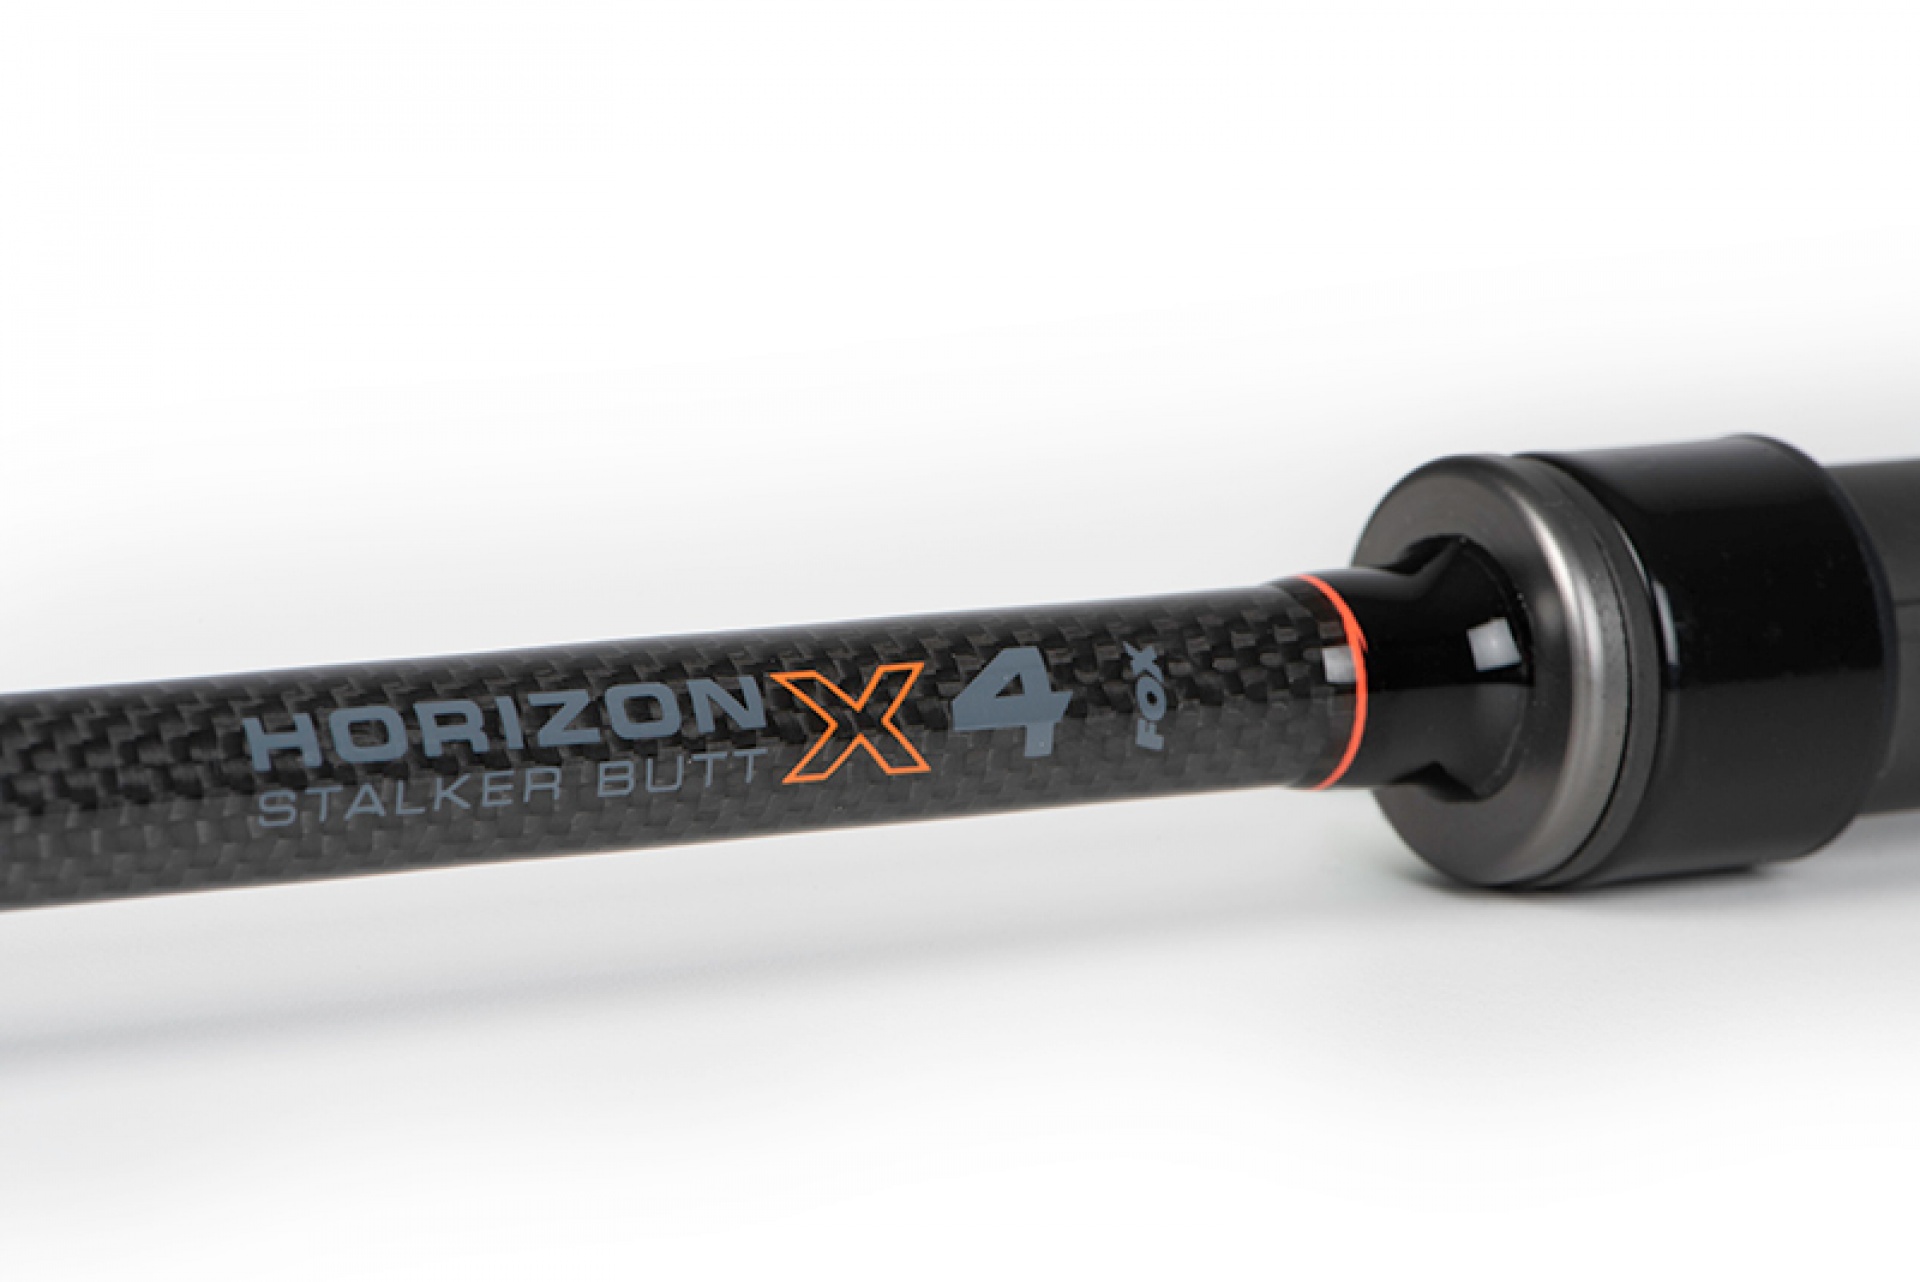 Fox Horizon X4 Stalker Butt Section 